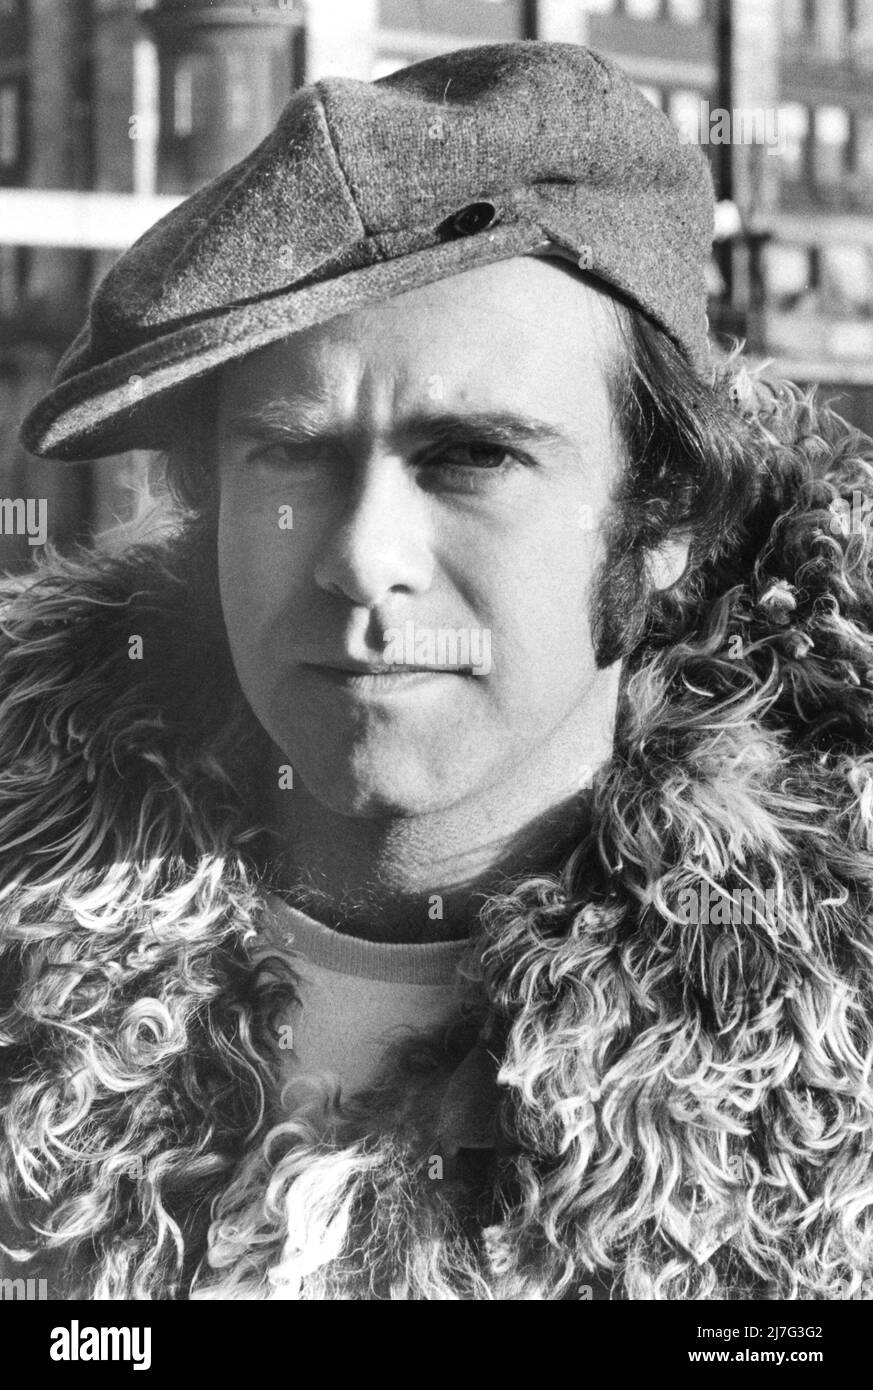 Elton John. Englische Sängerin und Songwriterin geboren im märz 25 1947. Foto während eines Besuches in Schweden 1978 Stockfoto